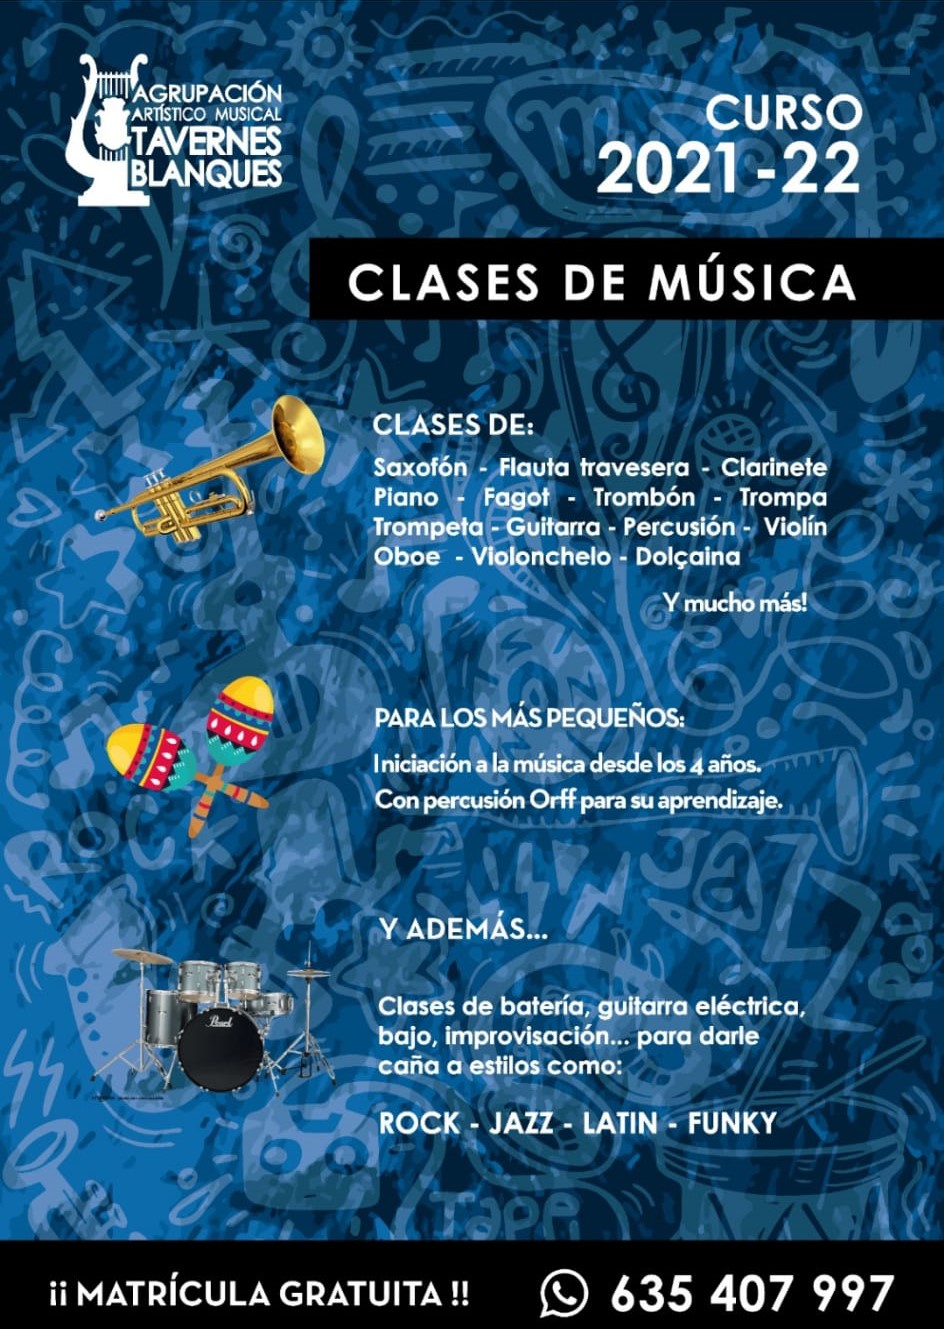 Matrícula gratis Agrupación Artístico Musical de